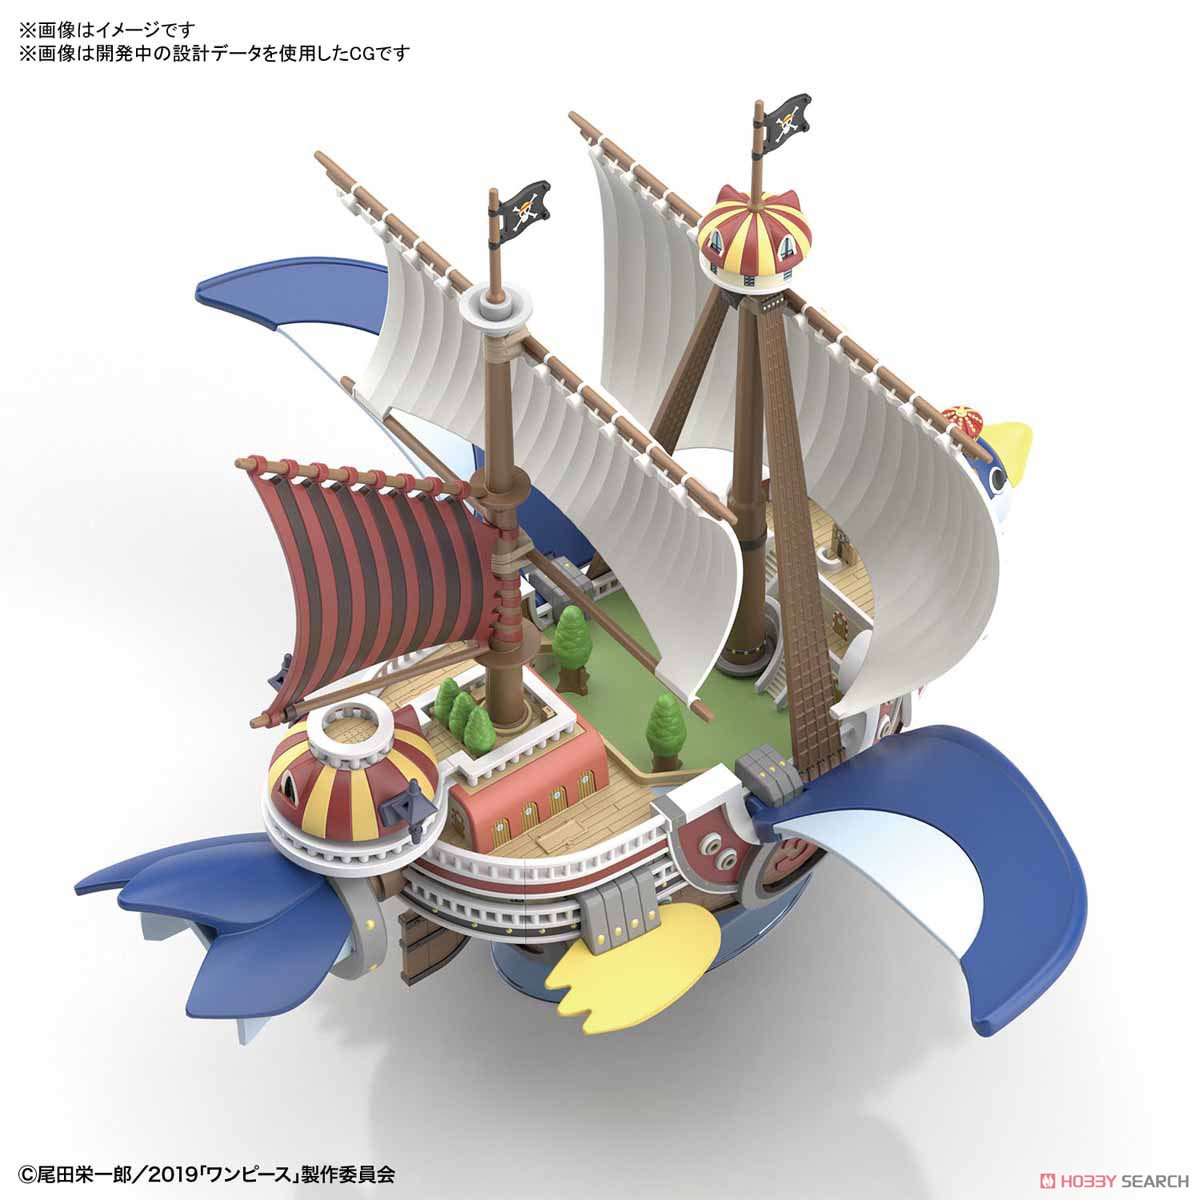 偉大なる船コレクション『サウザンド・サニー号 フライングモデル』ワンピース プラモデル-009